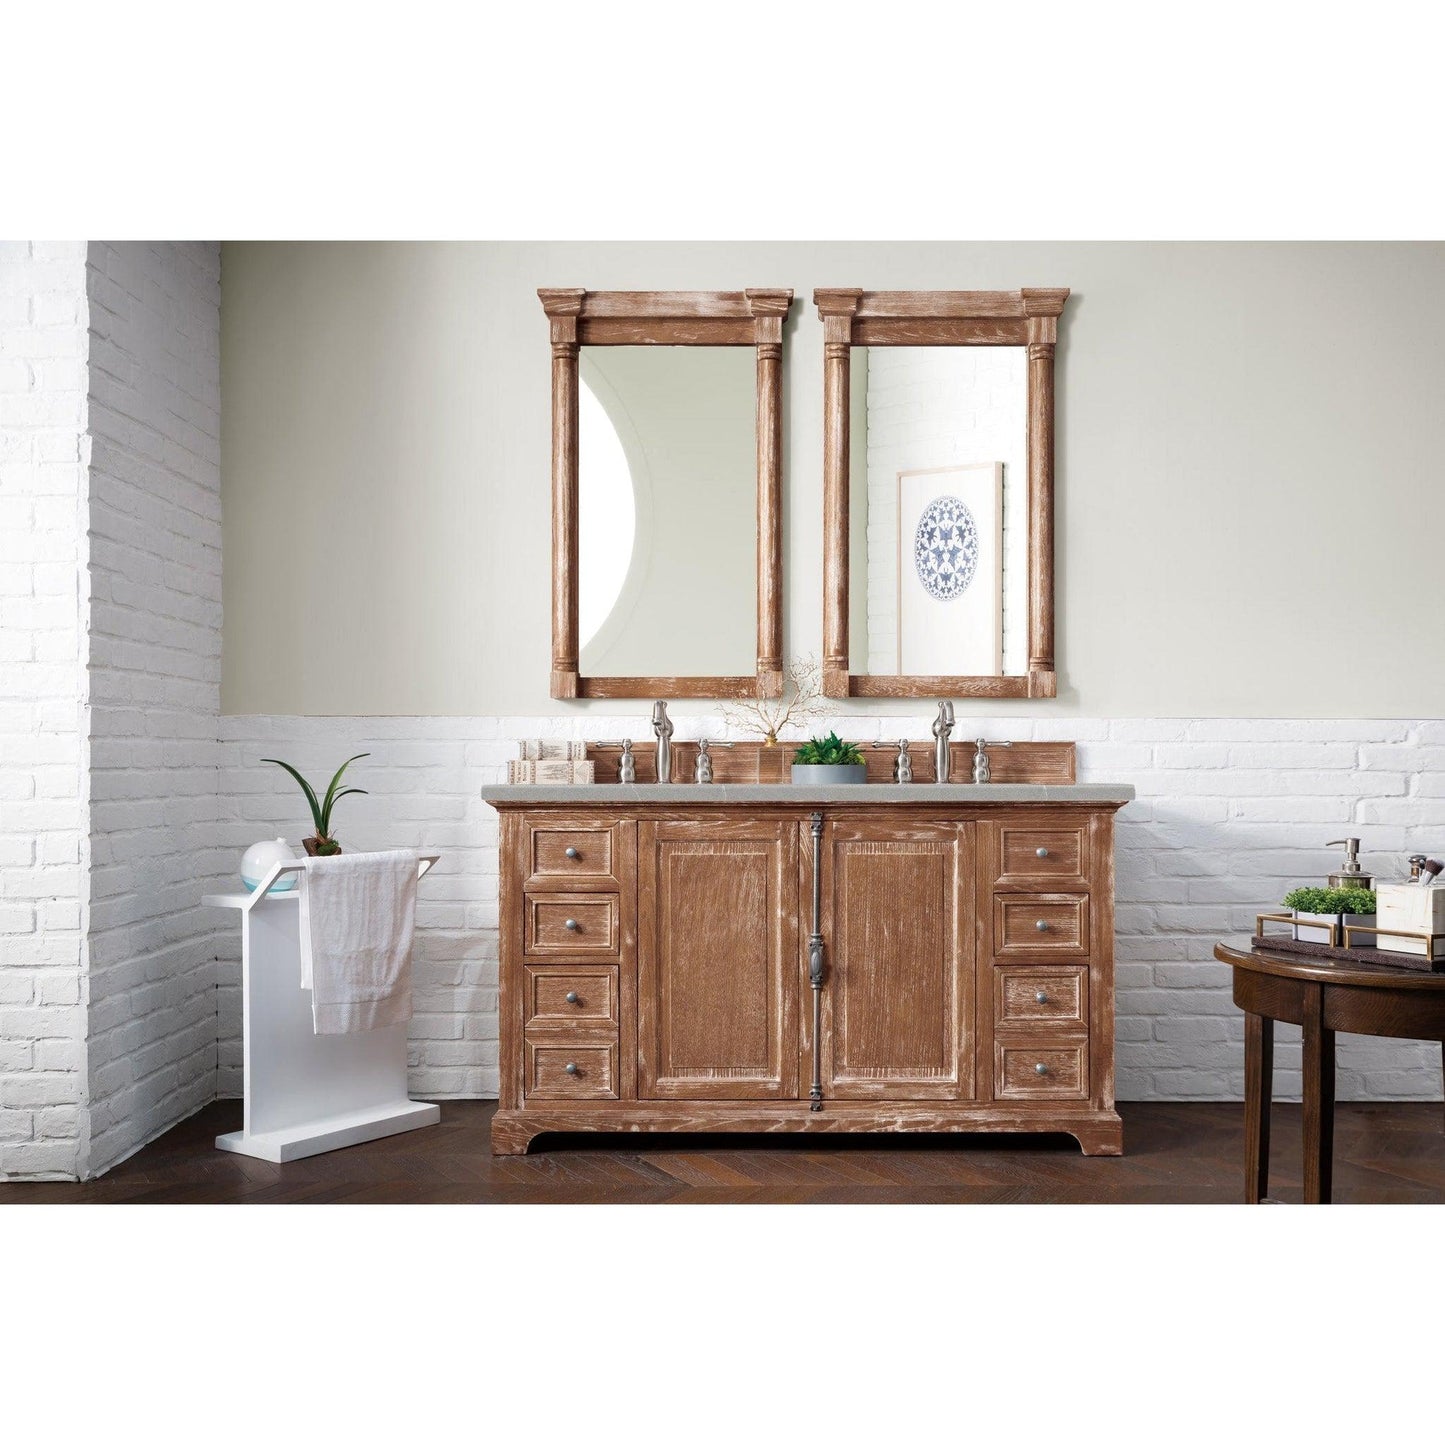 James Martin Vanities Providence 60" Driftwood Double Vanity Cabinet With 3cm Eternal Serena Quartz Top